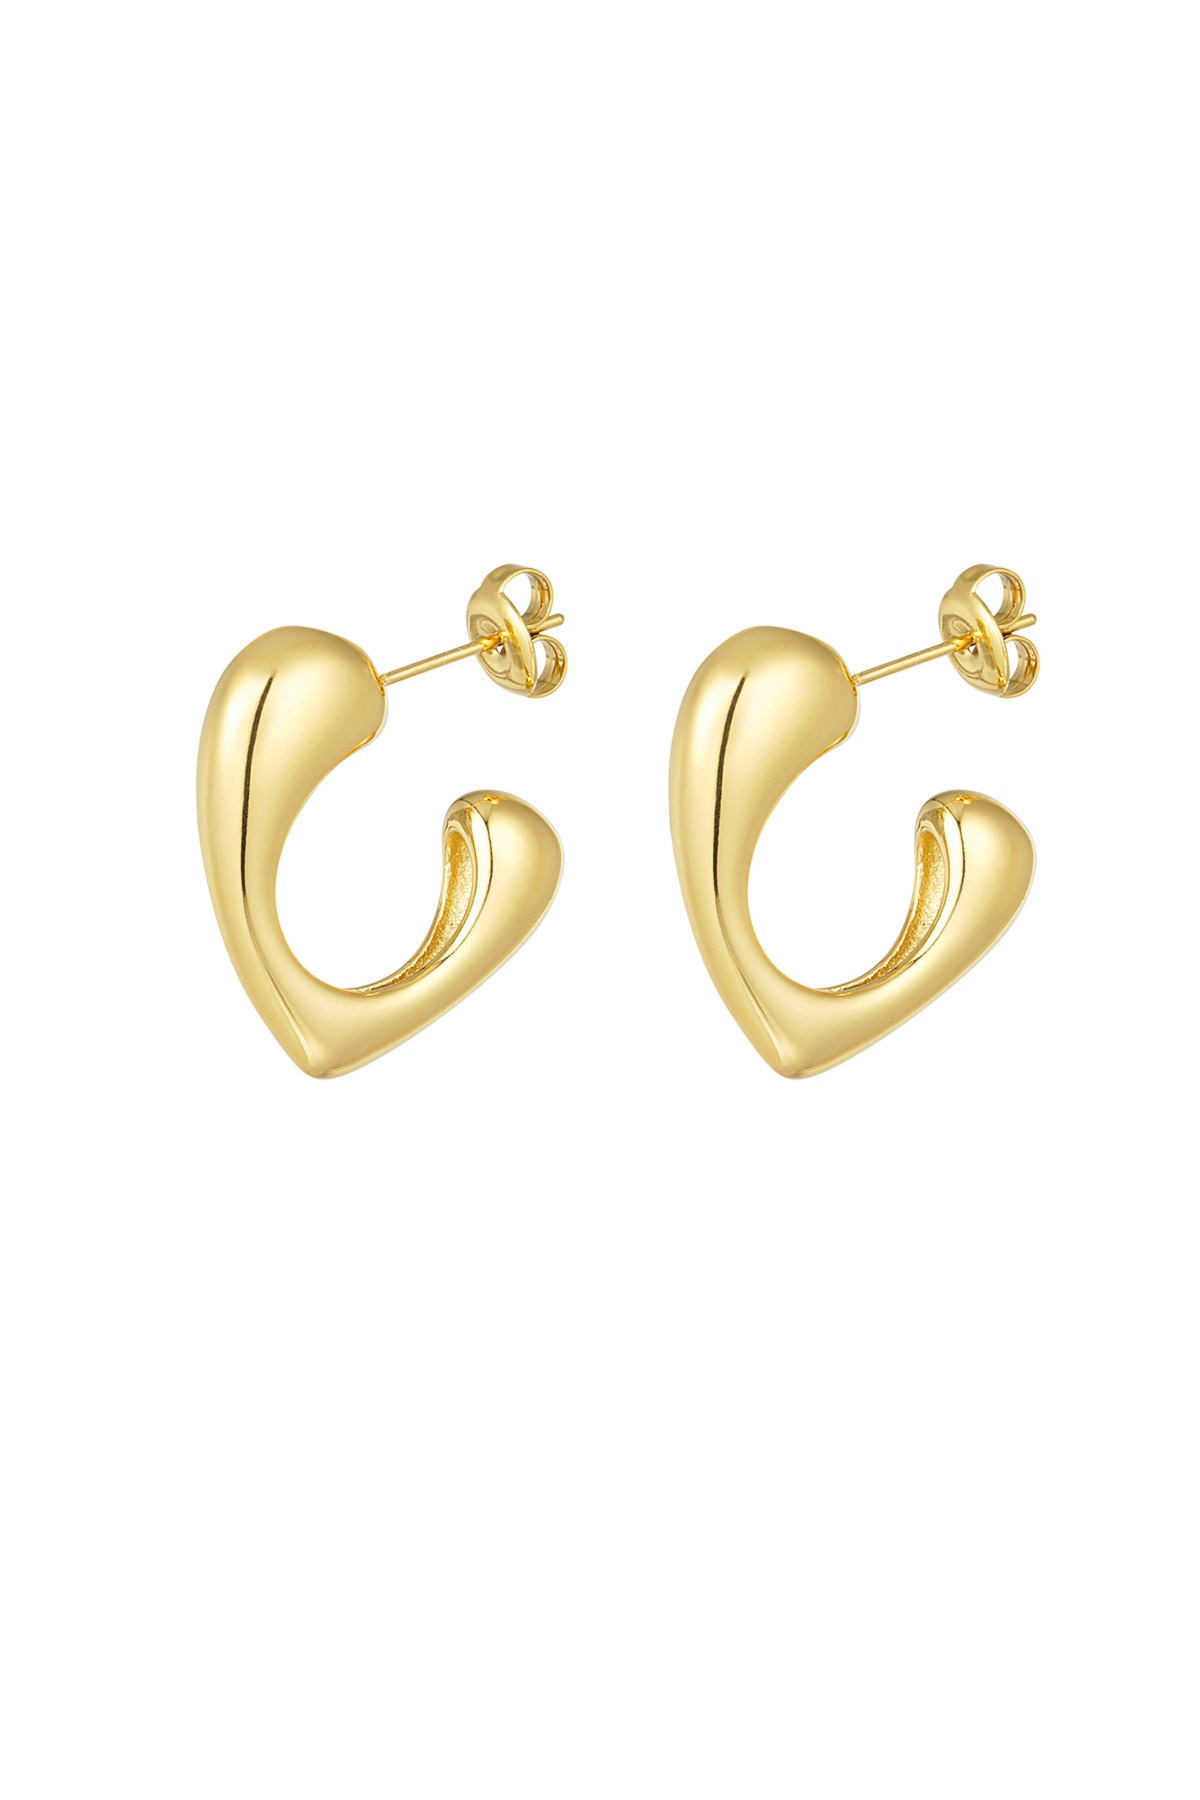 Hol dir die Ohrringe – Gold